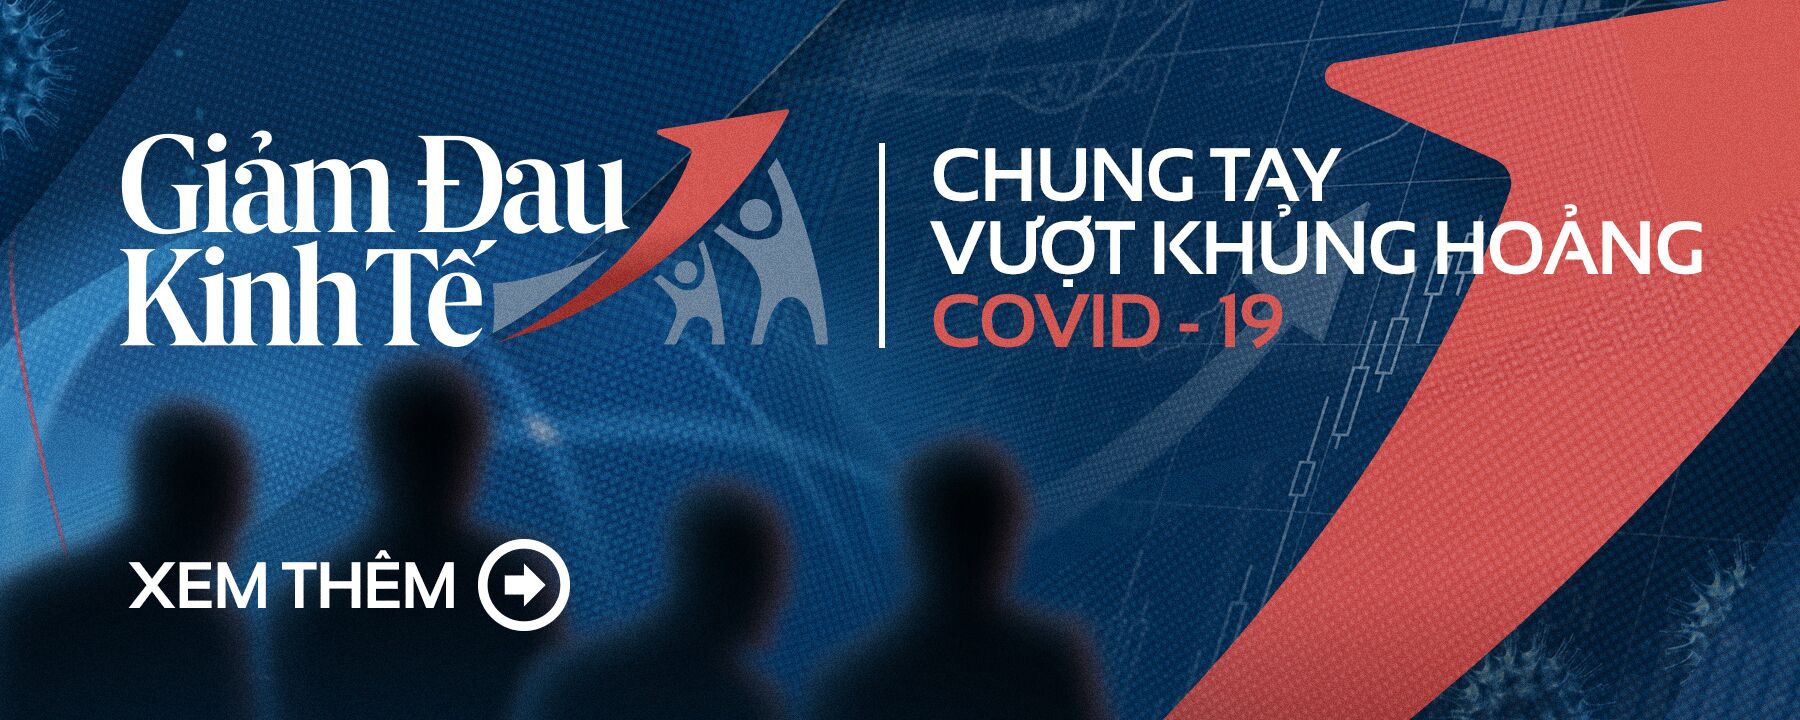 Khảo sát Quốc tế: Việt Nam là nơi có người dân tin tưởng Chính phủ nhất về chống dịch Covid-19 - Ảnh 3.